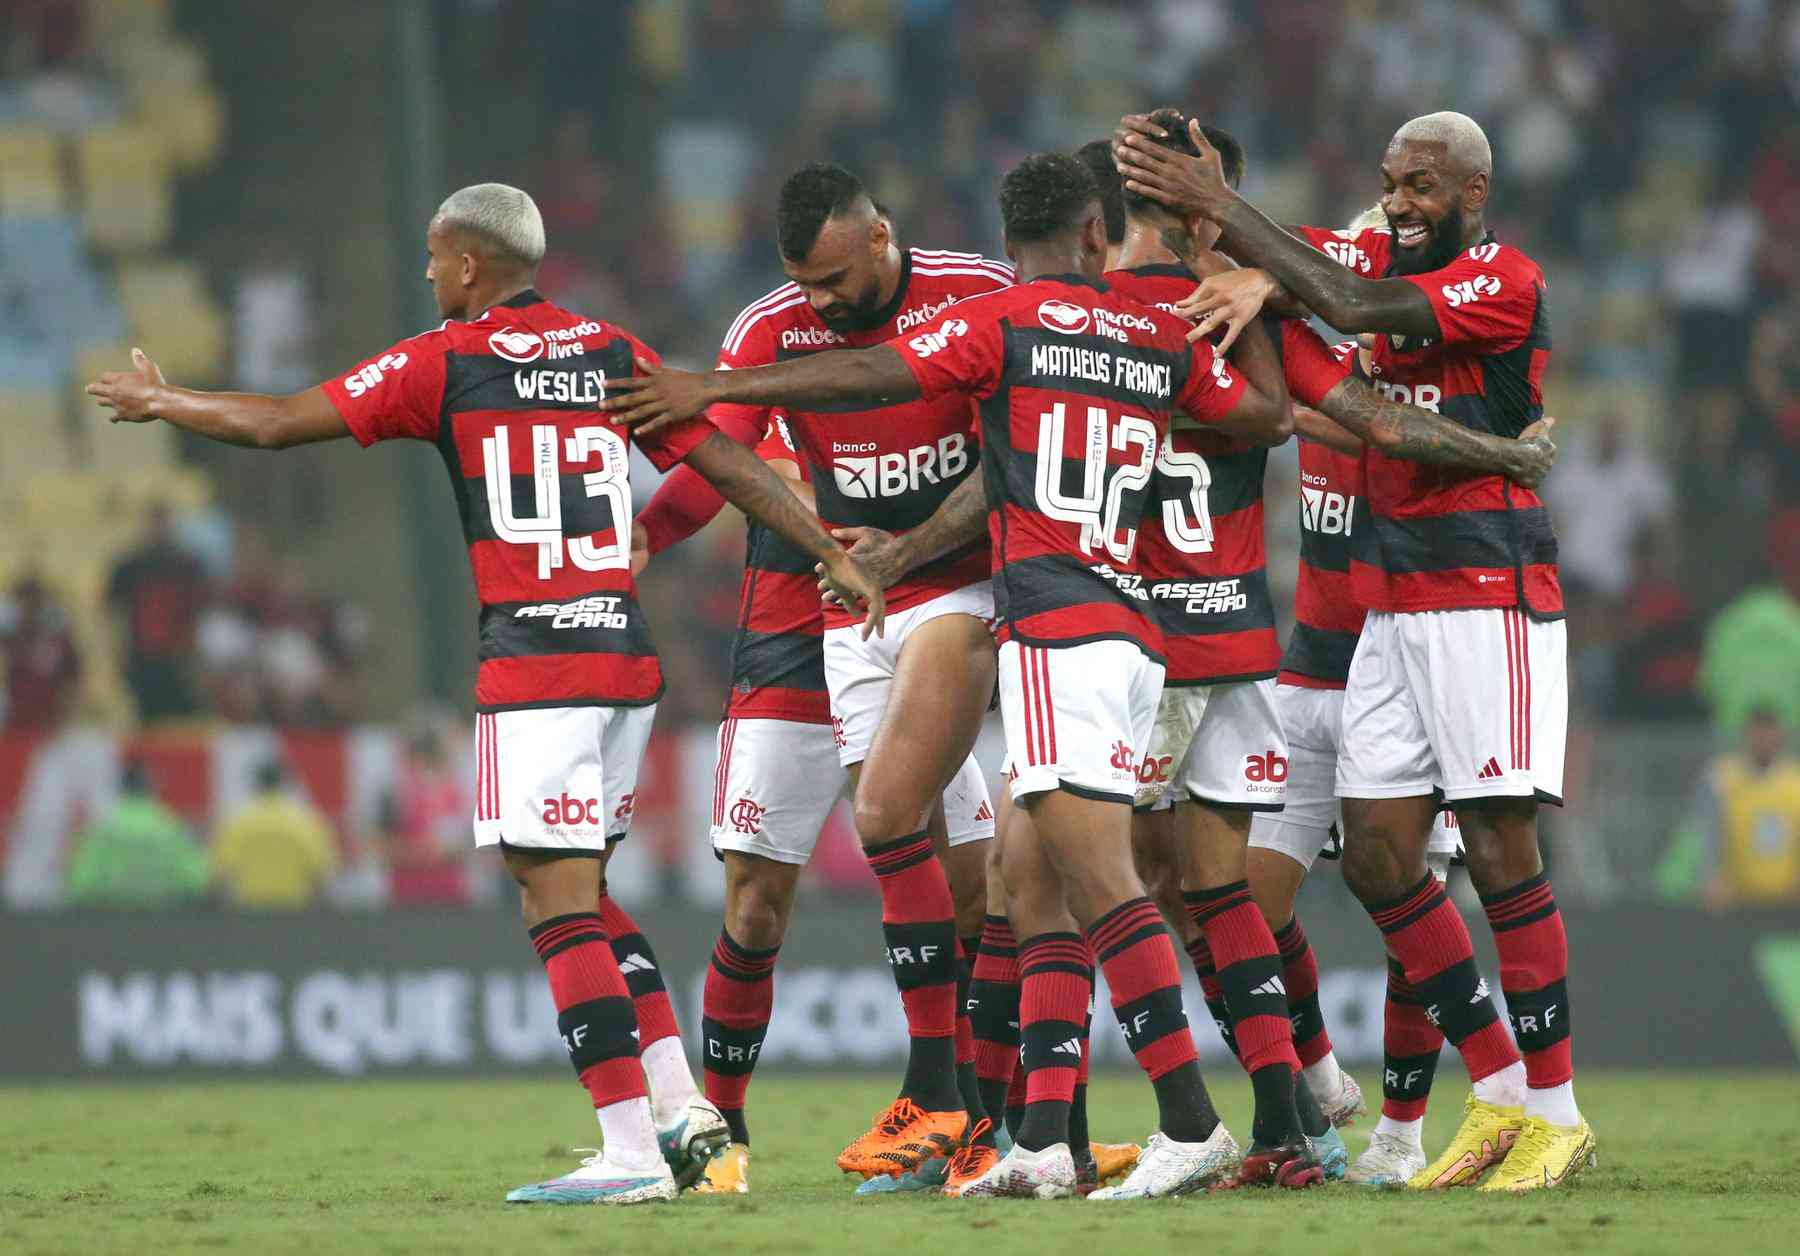 Cabe no Fortaleza? Flamengo coloca três jogadores para buscarem